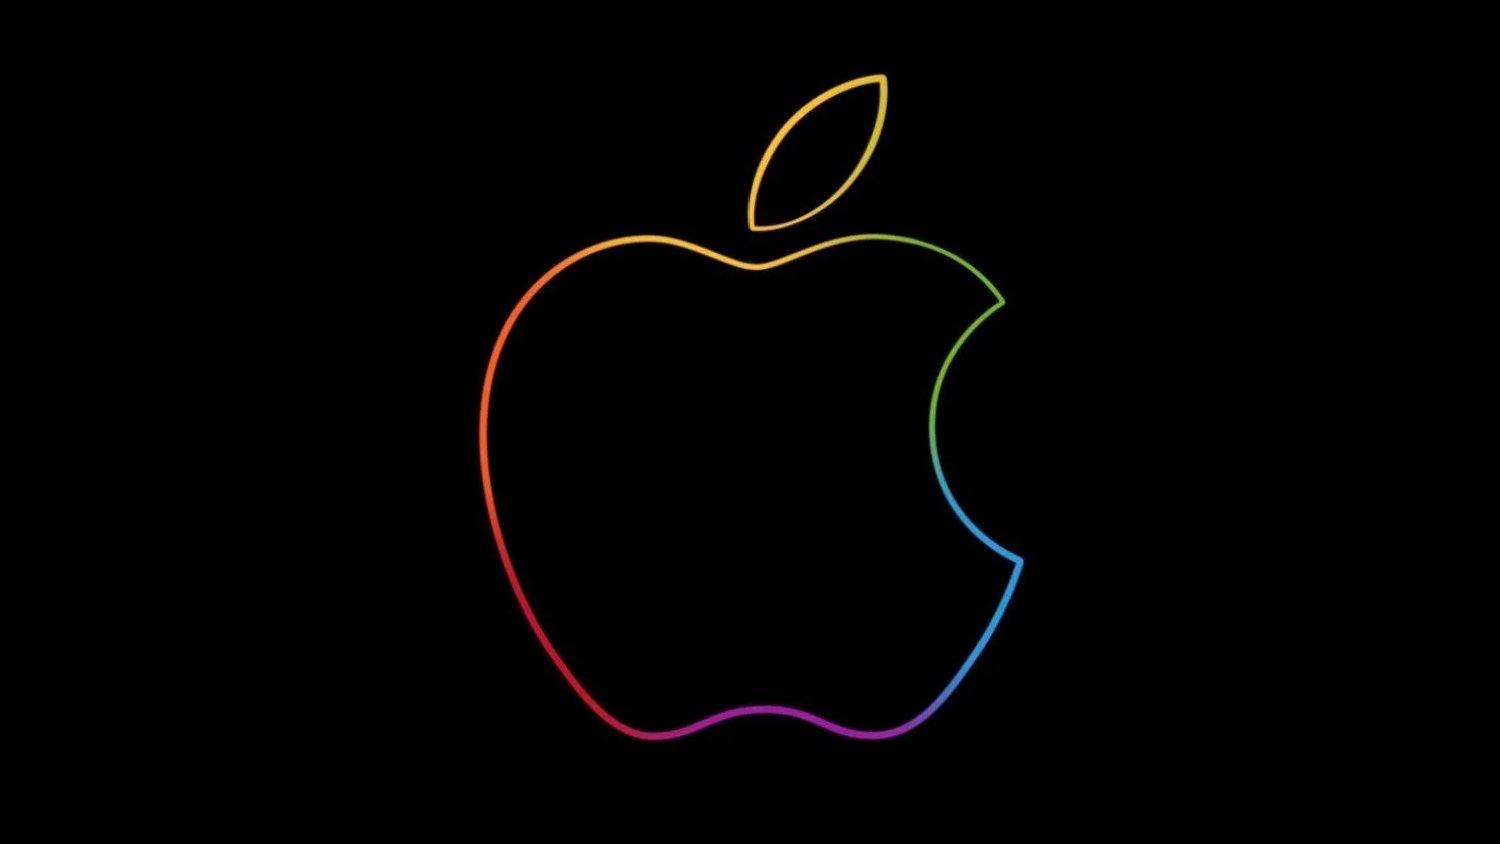 אפל (Apple) - לוגו התפוח